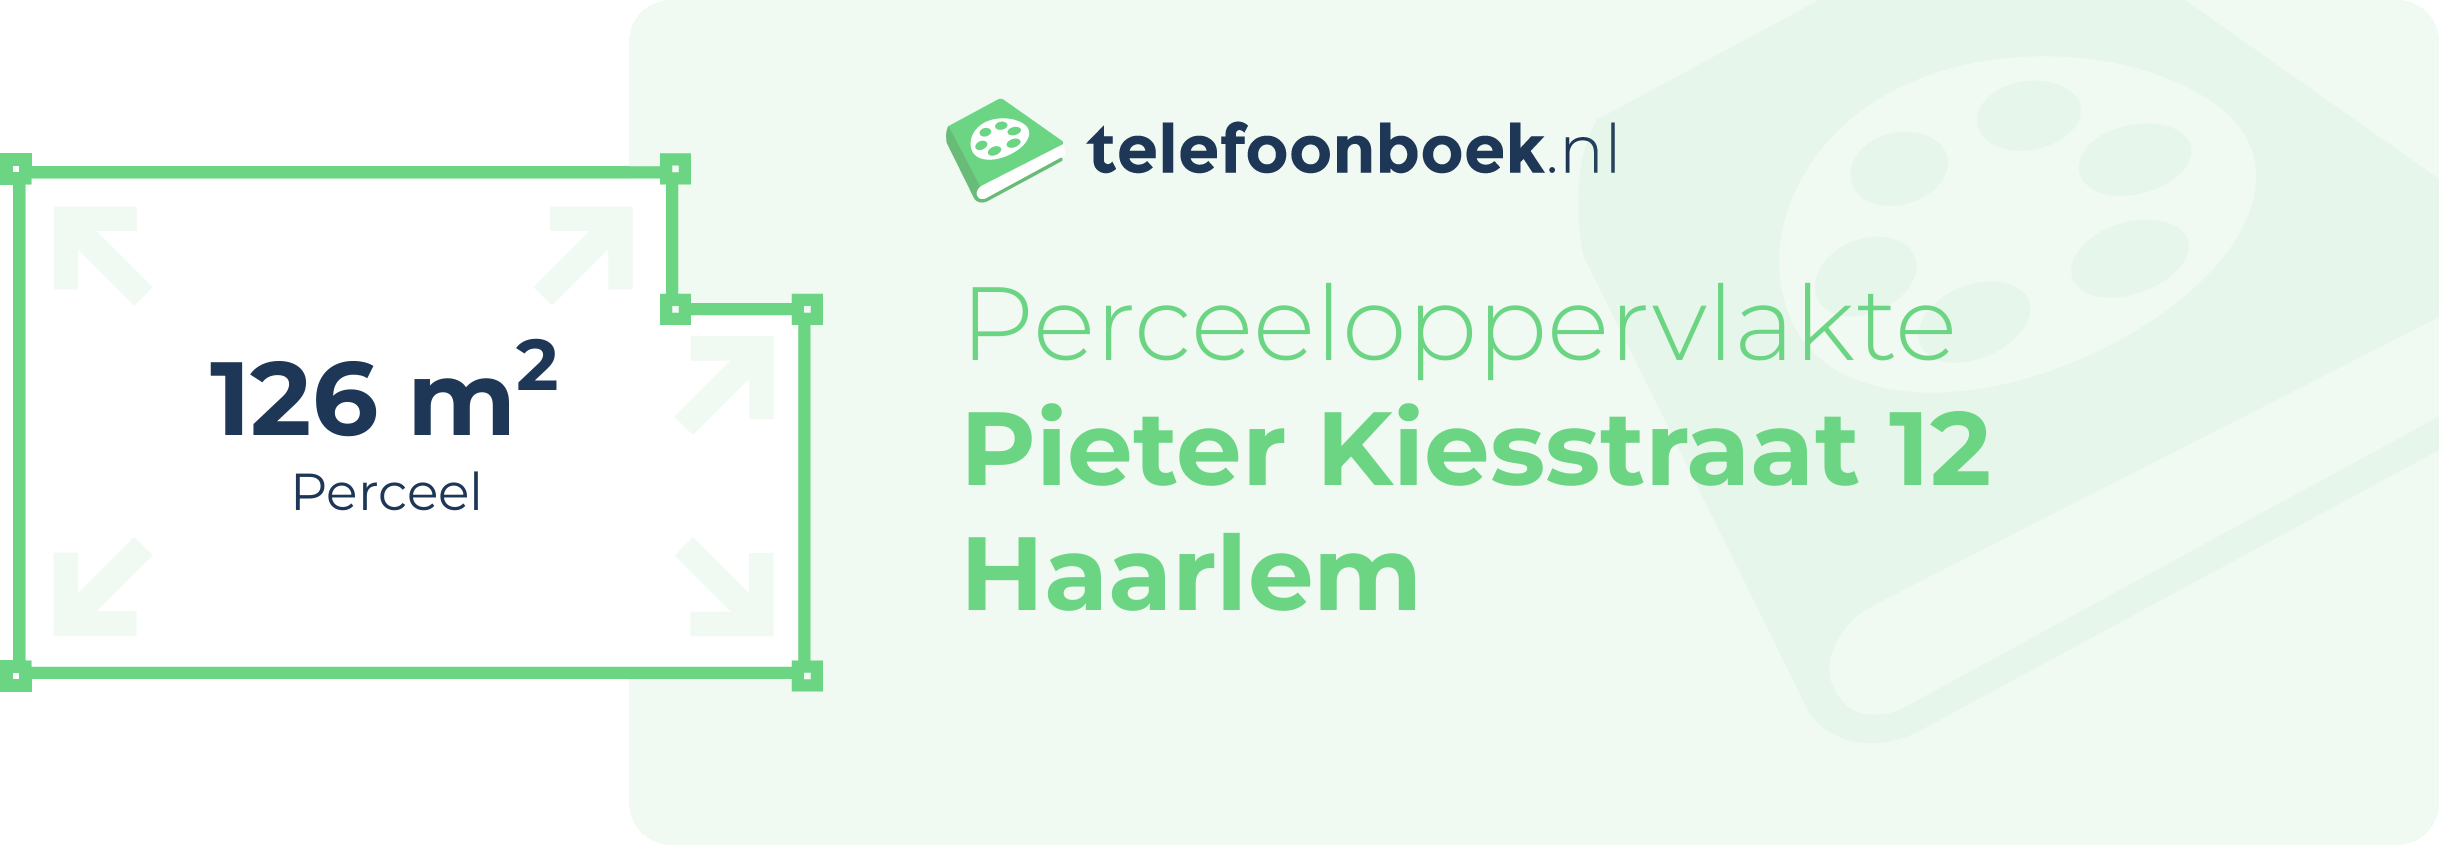 Perceeloppervlakte Pieter Kiesstraat 12 Haarlem